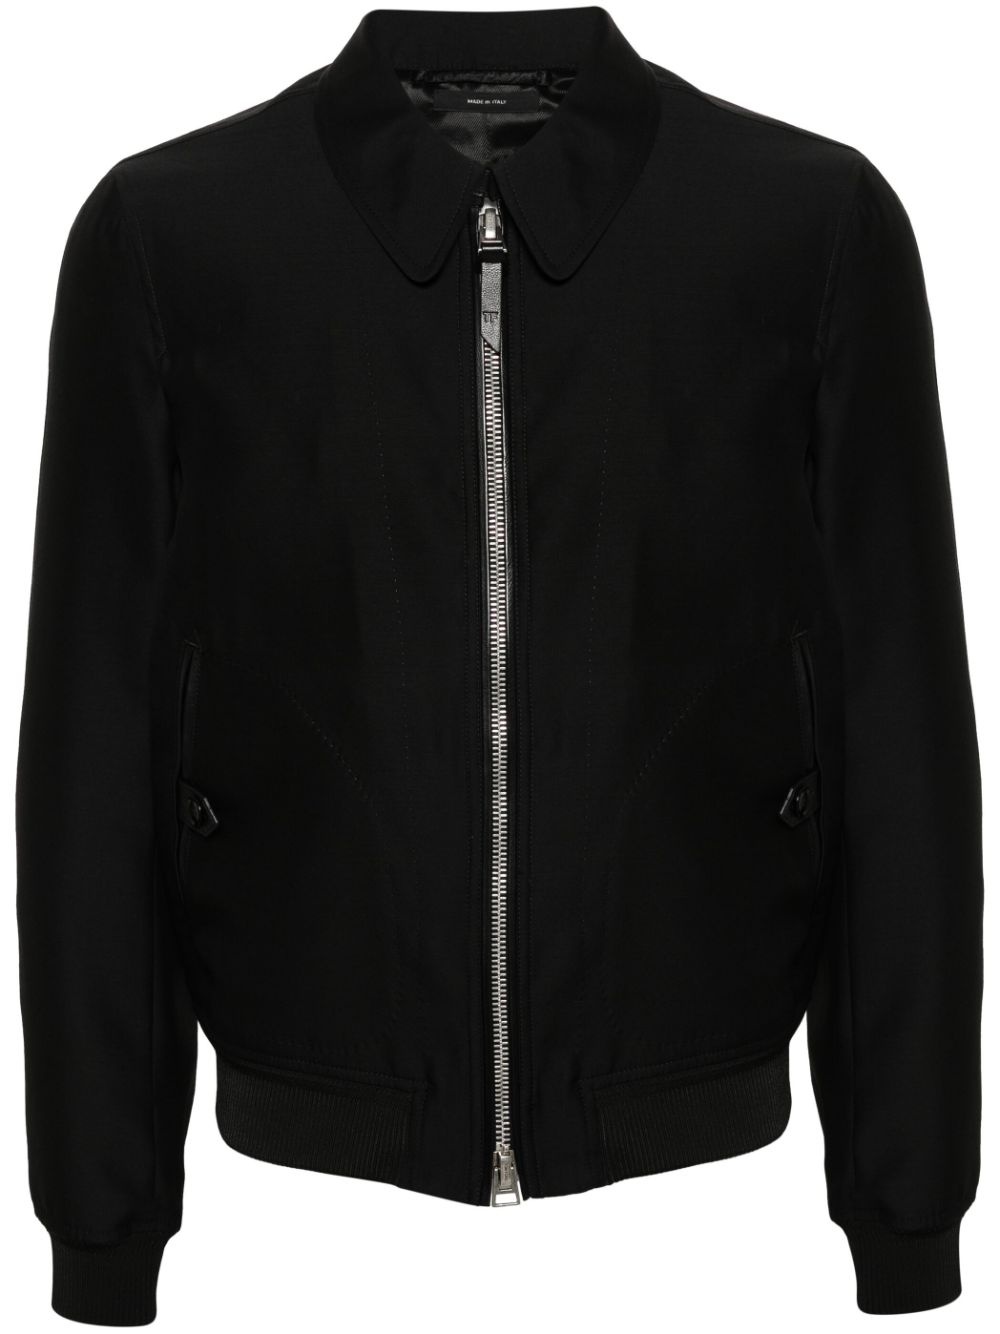 spread-collar zip-up shirt jacket - 1